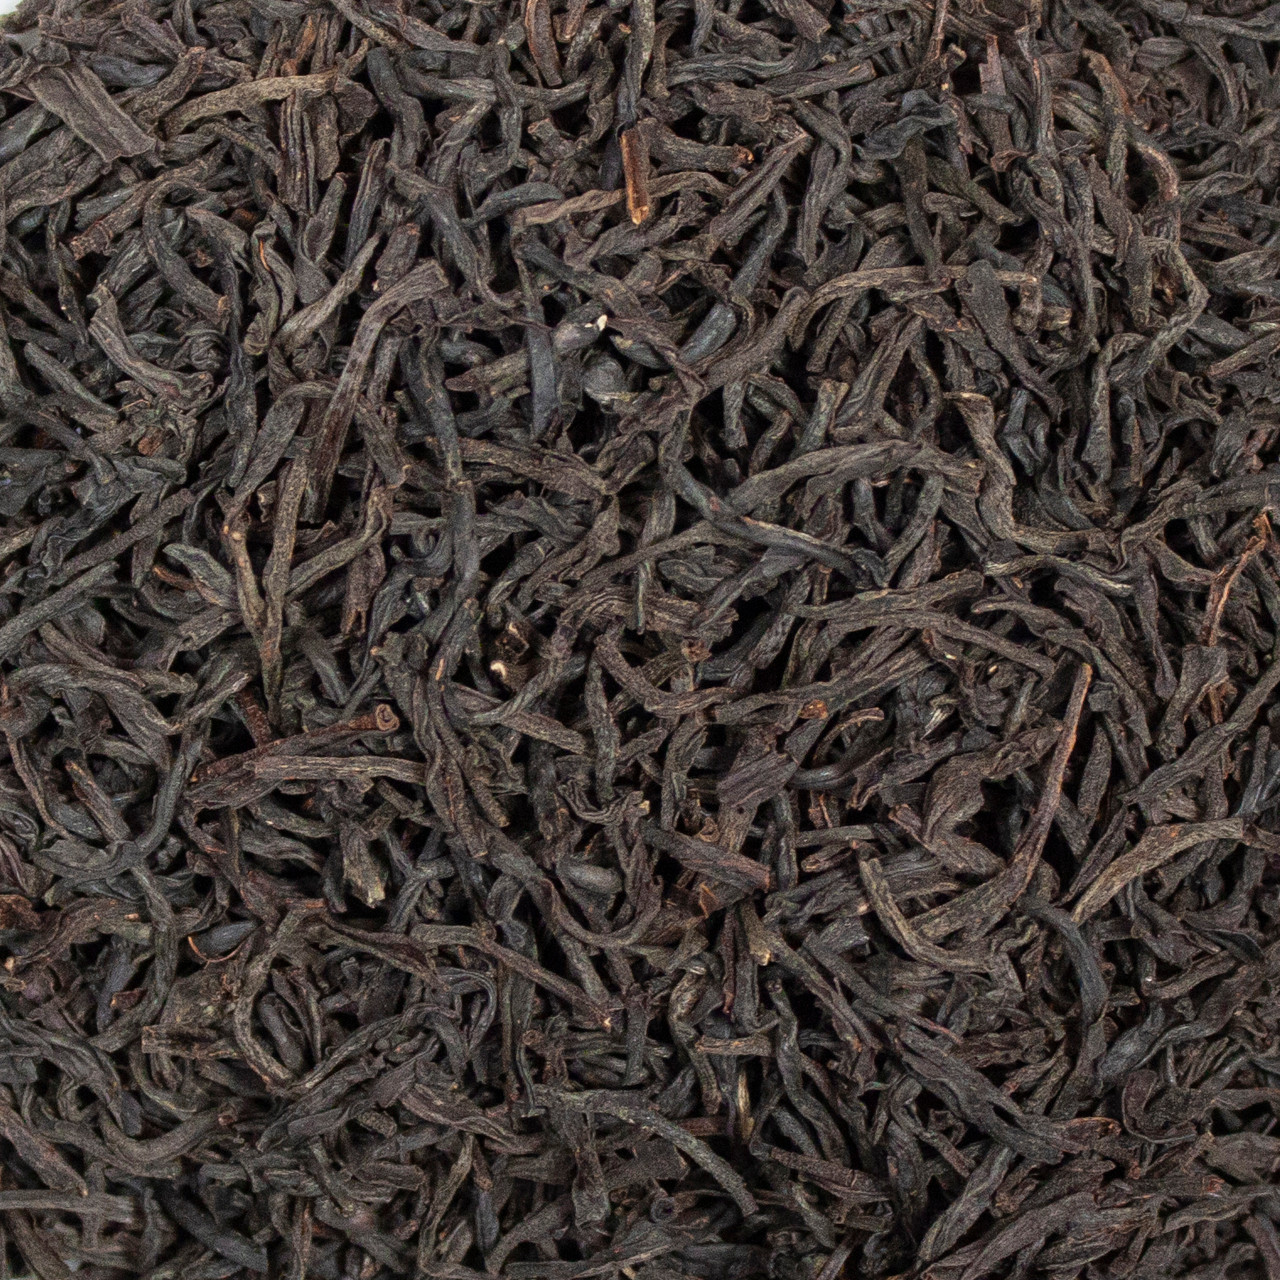 Ceylon Orange Pekoe Loose Leaf Tea